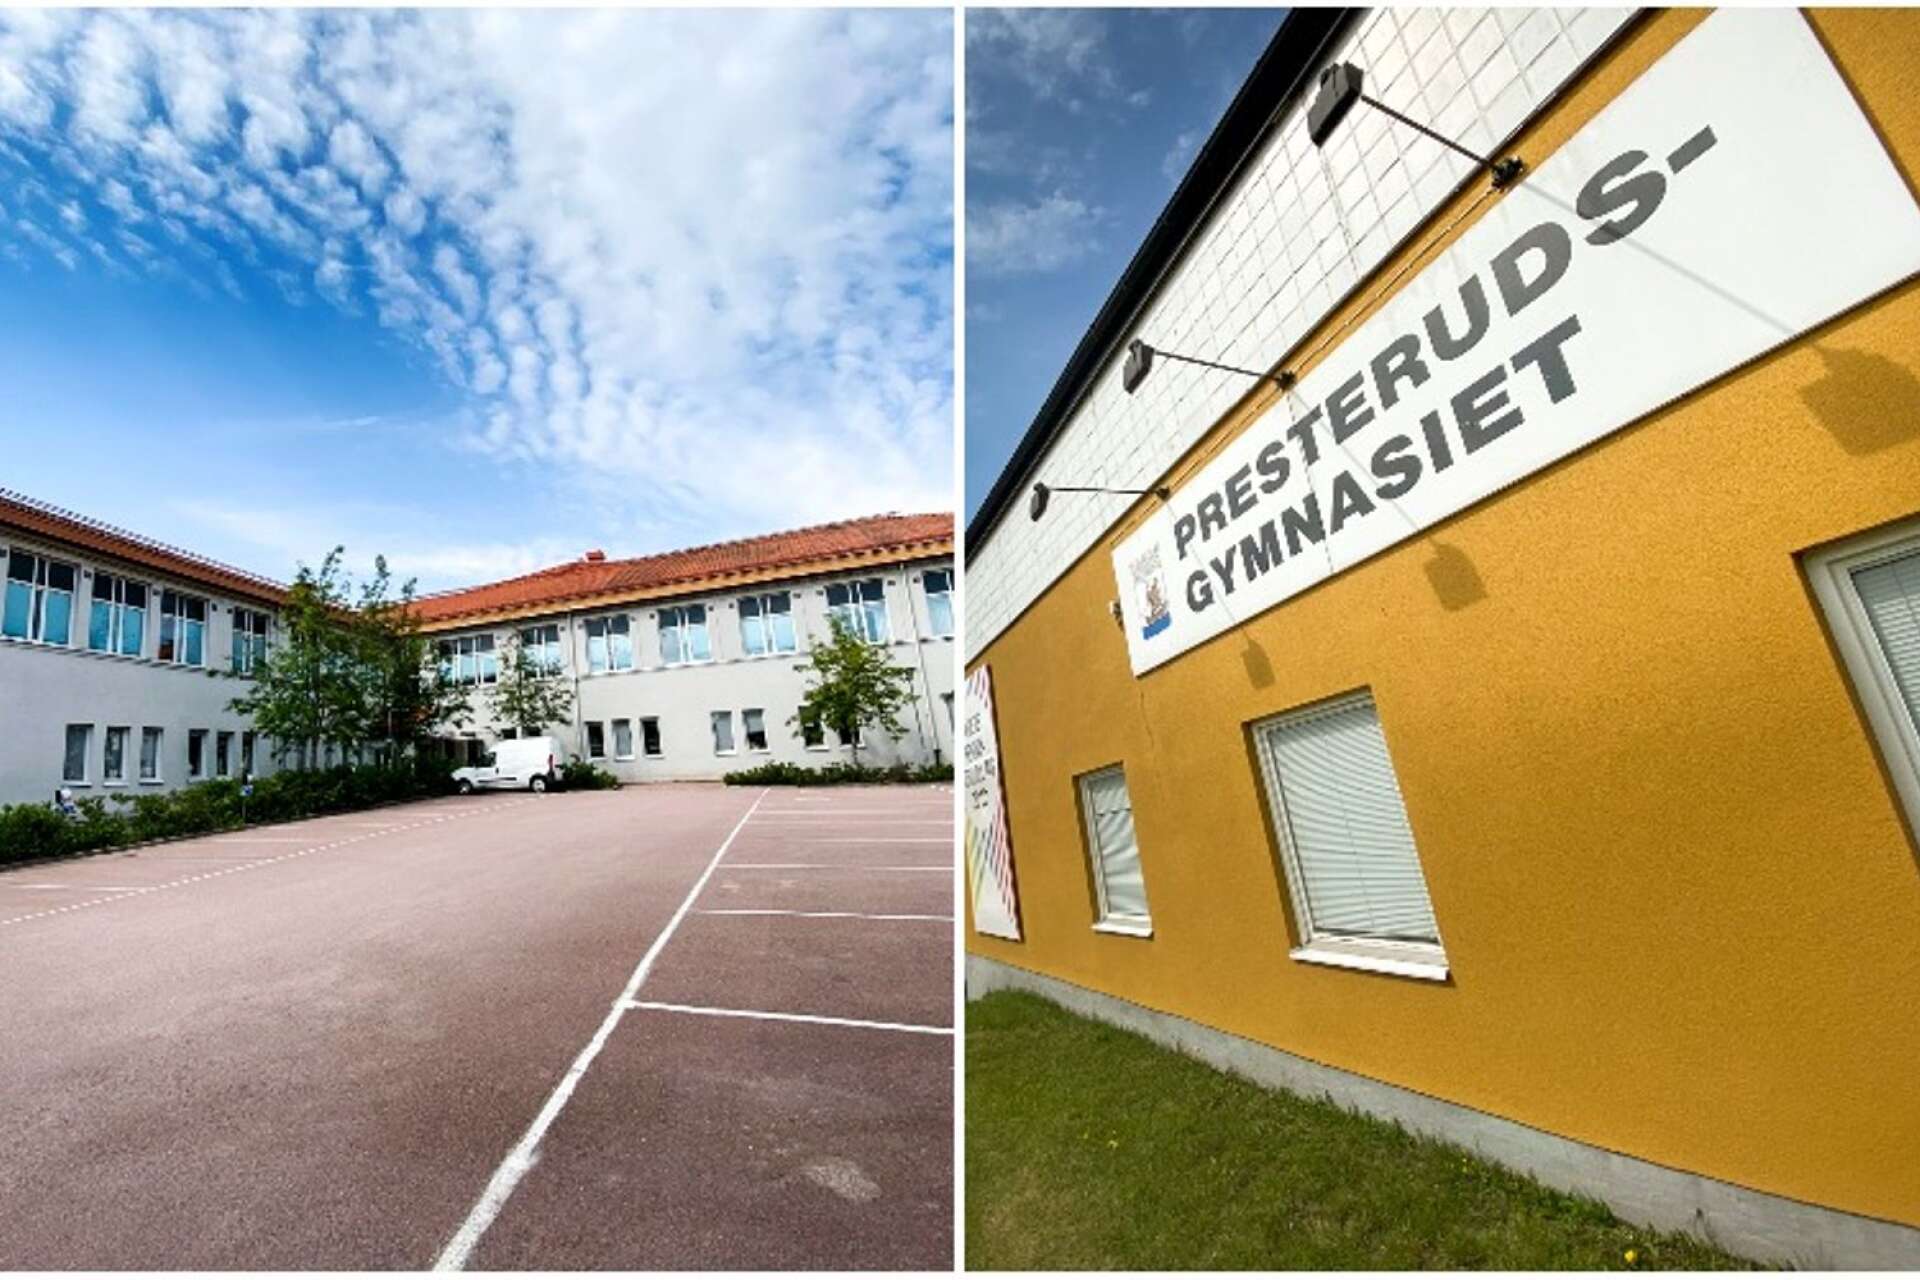 När KTIC invigs kommer de två gymnasieskolor som Kristinehamns kommun har i dag, Brogårdsgymnasiet och Presterudsgymnasiet, att slås samman till Brogymnasiet.